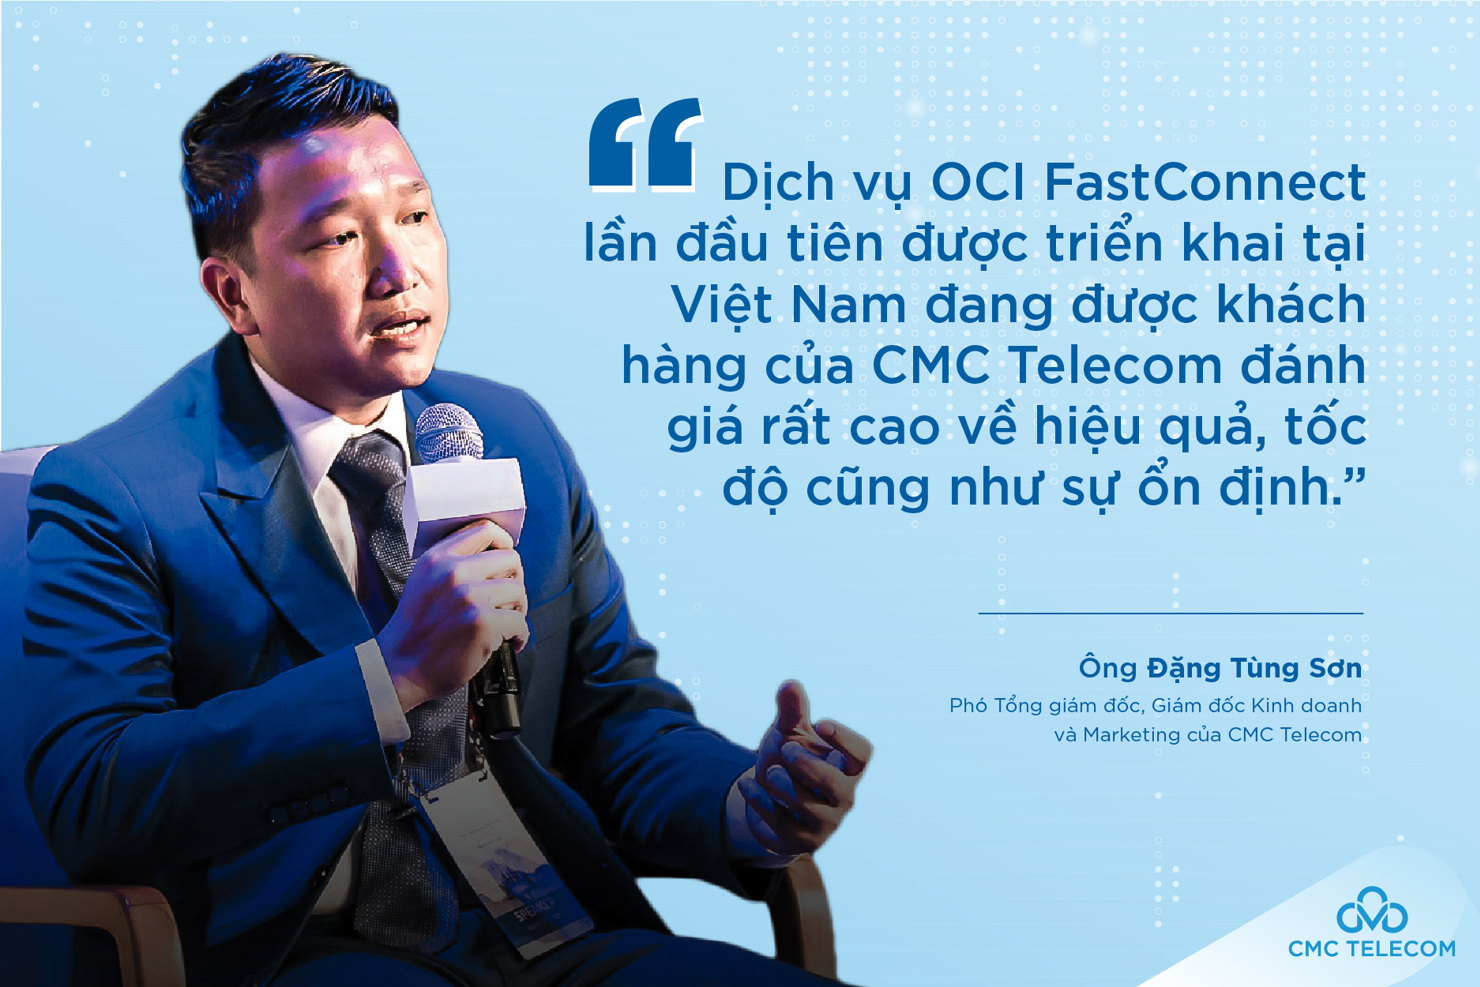 Ông Đặng Tùng Sơn, Phó Tổng giám đốc, Giám đốc Kinh doanh và Marketing của CMC Telecom